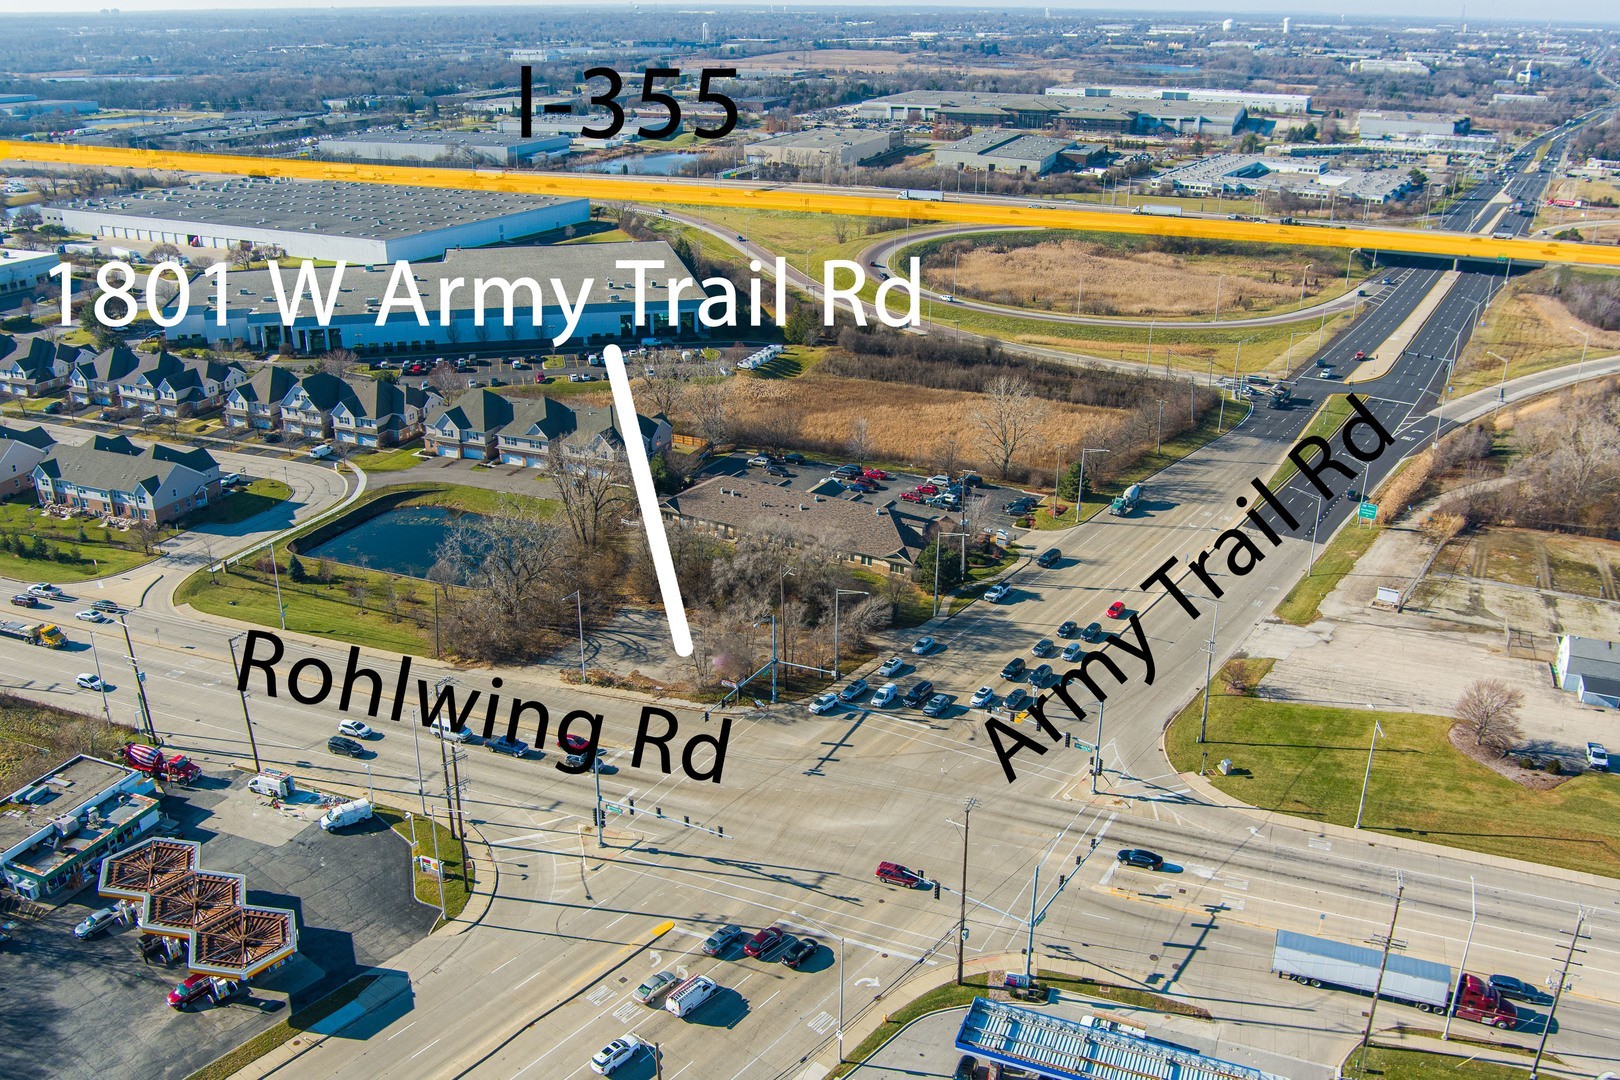 4. 1801 W Army Trail Road